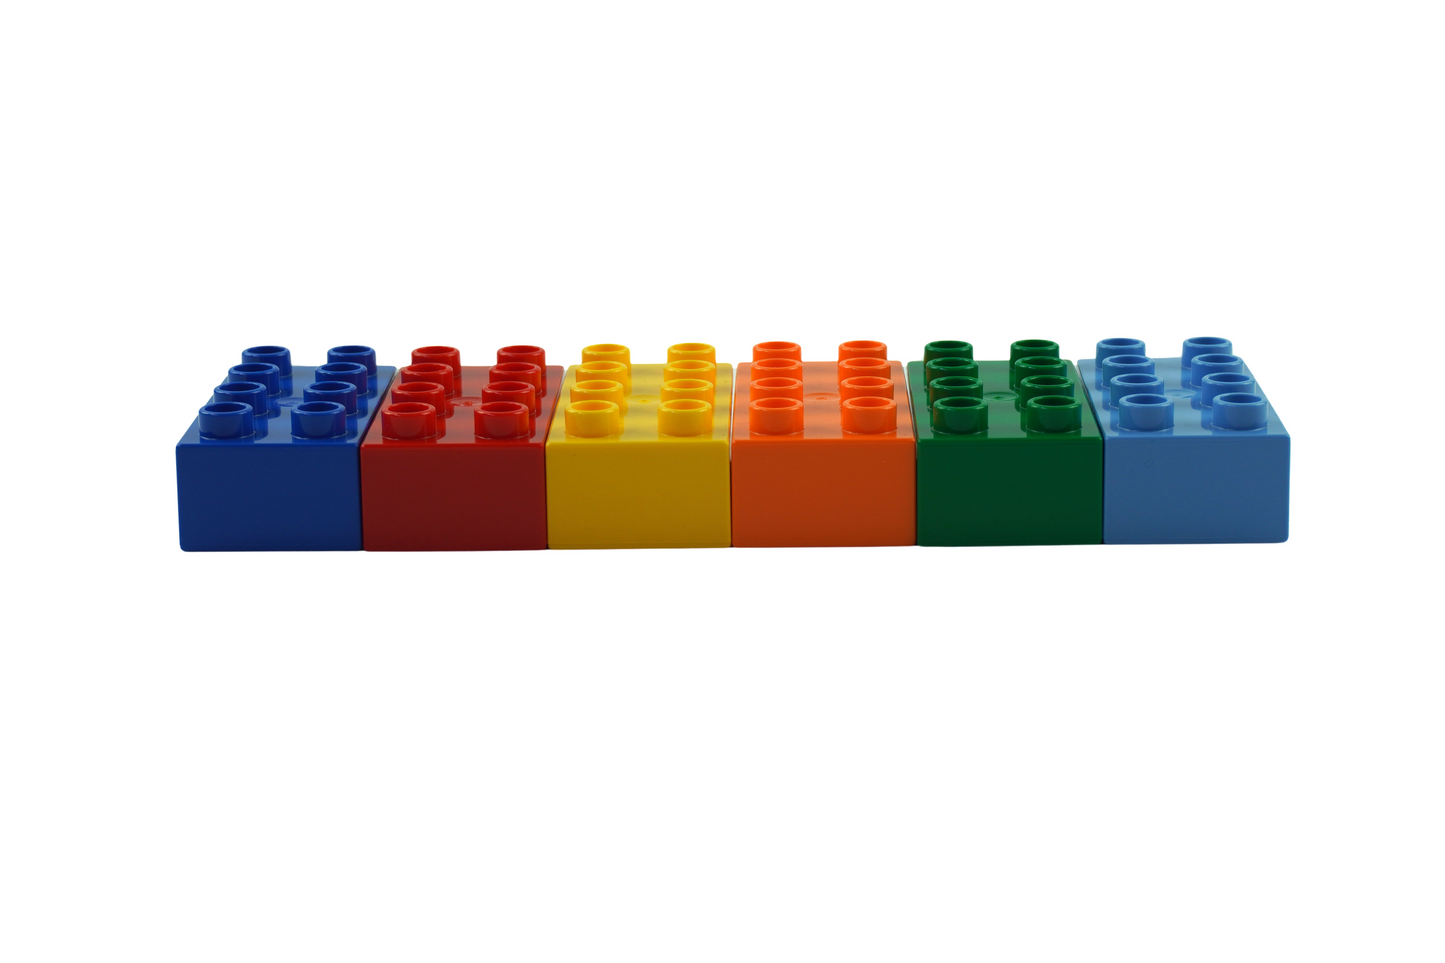 Blocs de construction en briques LEGO® DUPLO® 2x4 blocs de construction de base colorés mélangés - 3011 NOUVEAU ! Quantité 250x 